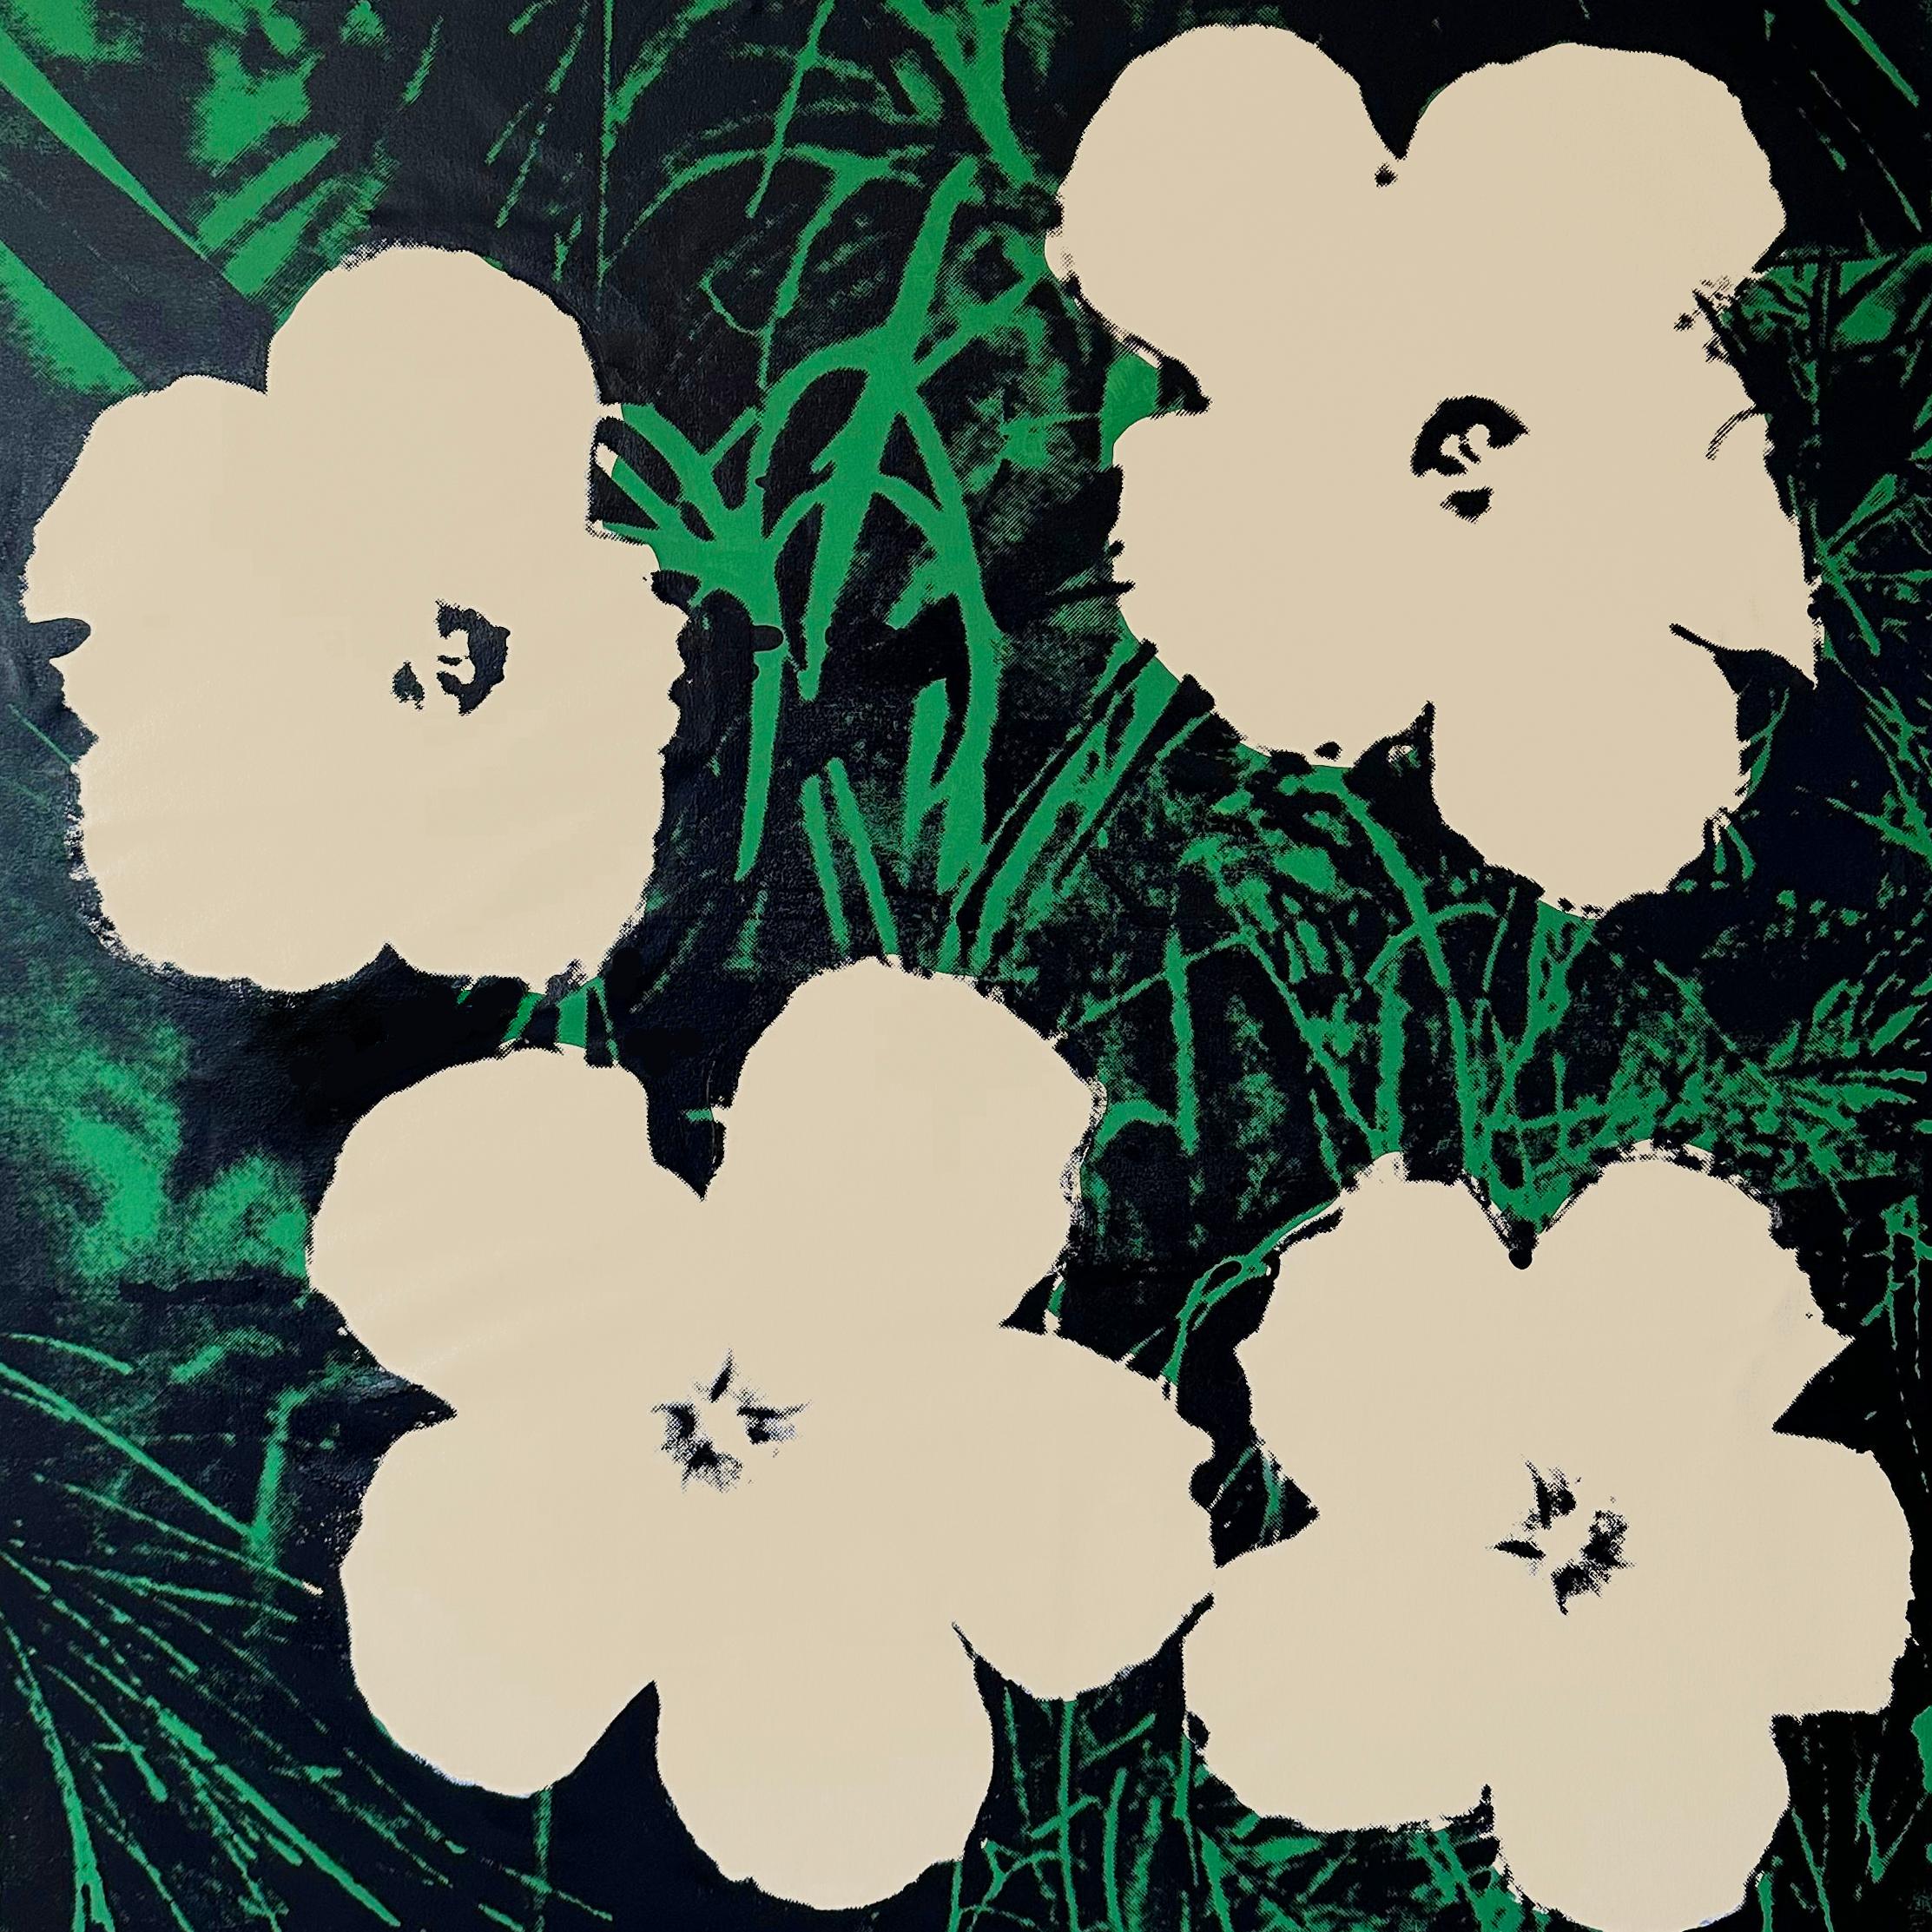 Denied Andy Warhol Flowers White 48 x48" sur toile Peinture Pop Art Charles Lutz